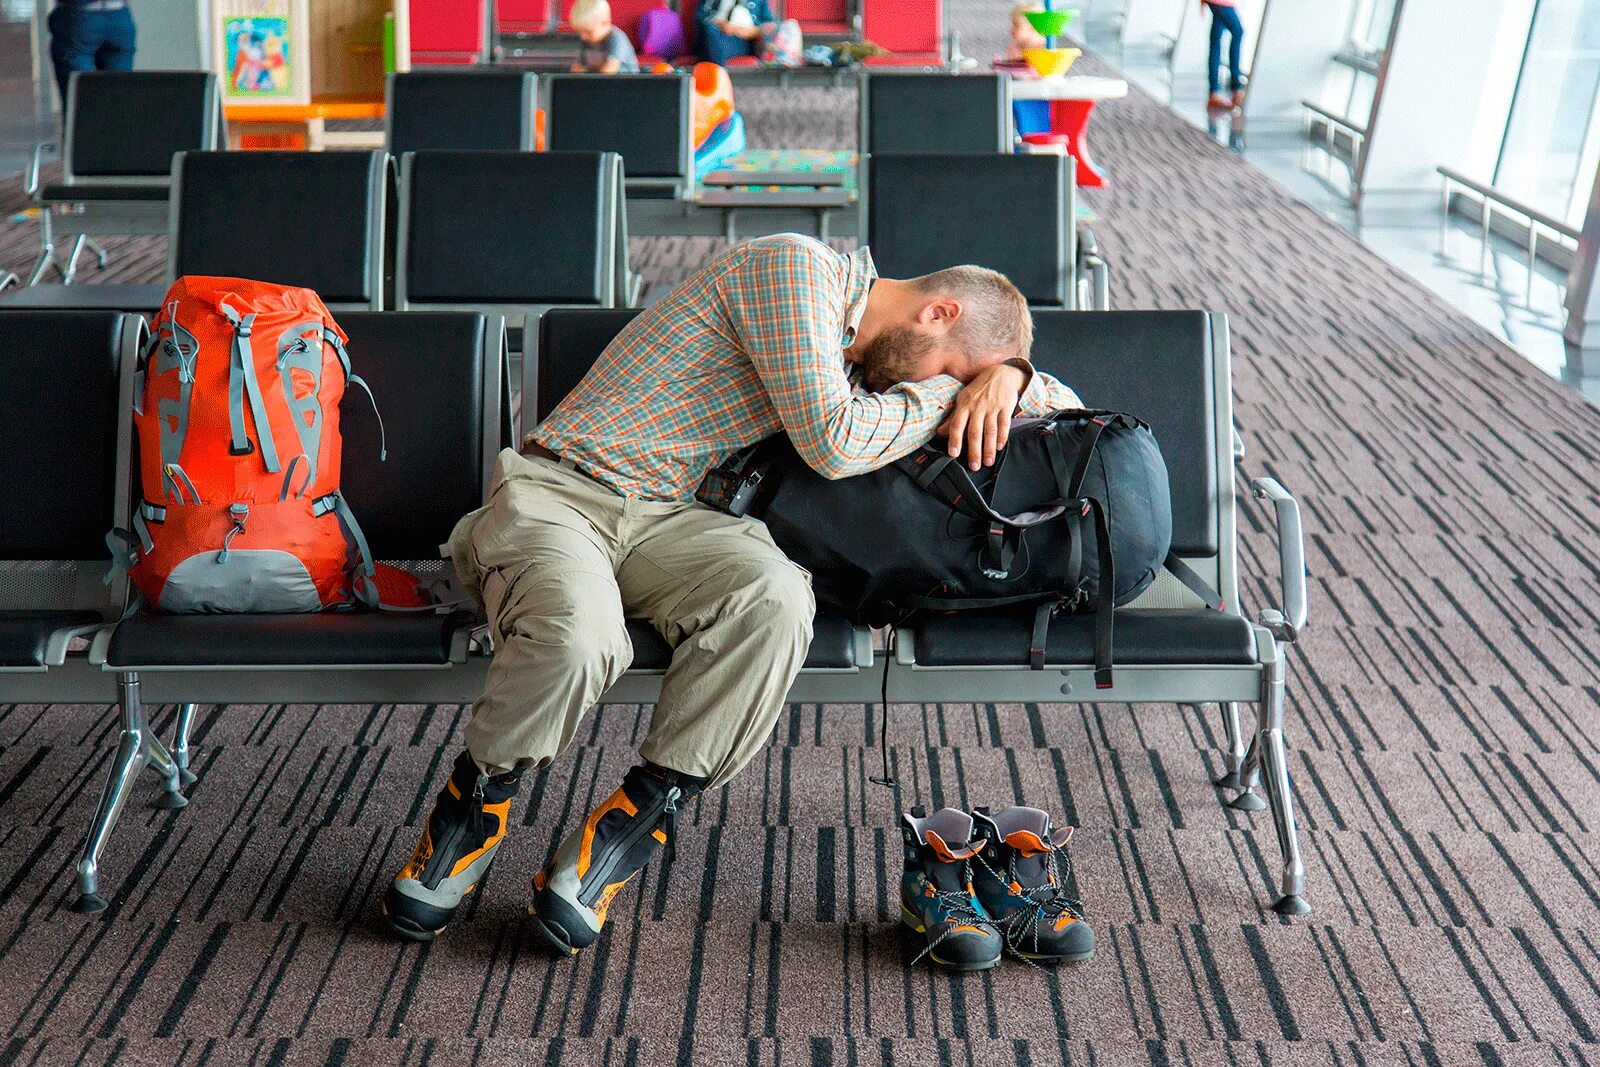 Ожидание в аэропорту. Люди в аэропорту ждут. Люди в зале ожидания. Человек спящий в аэропорту. Уставшие туристы